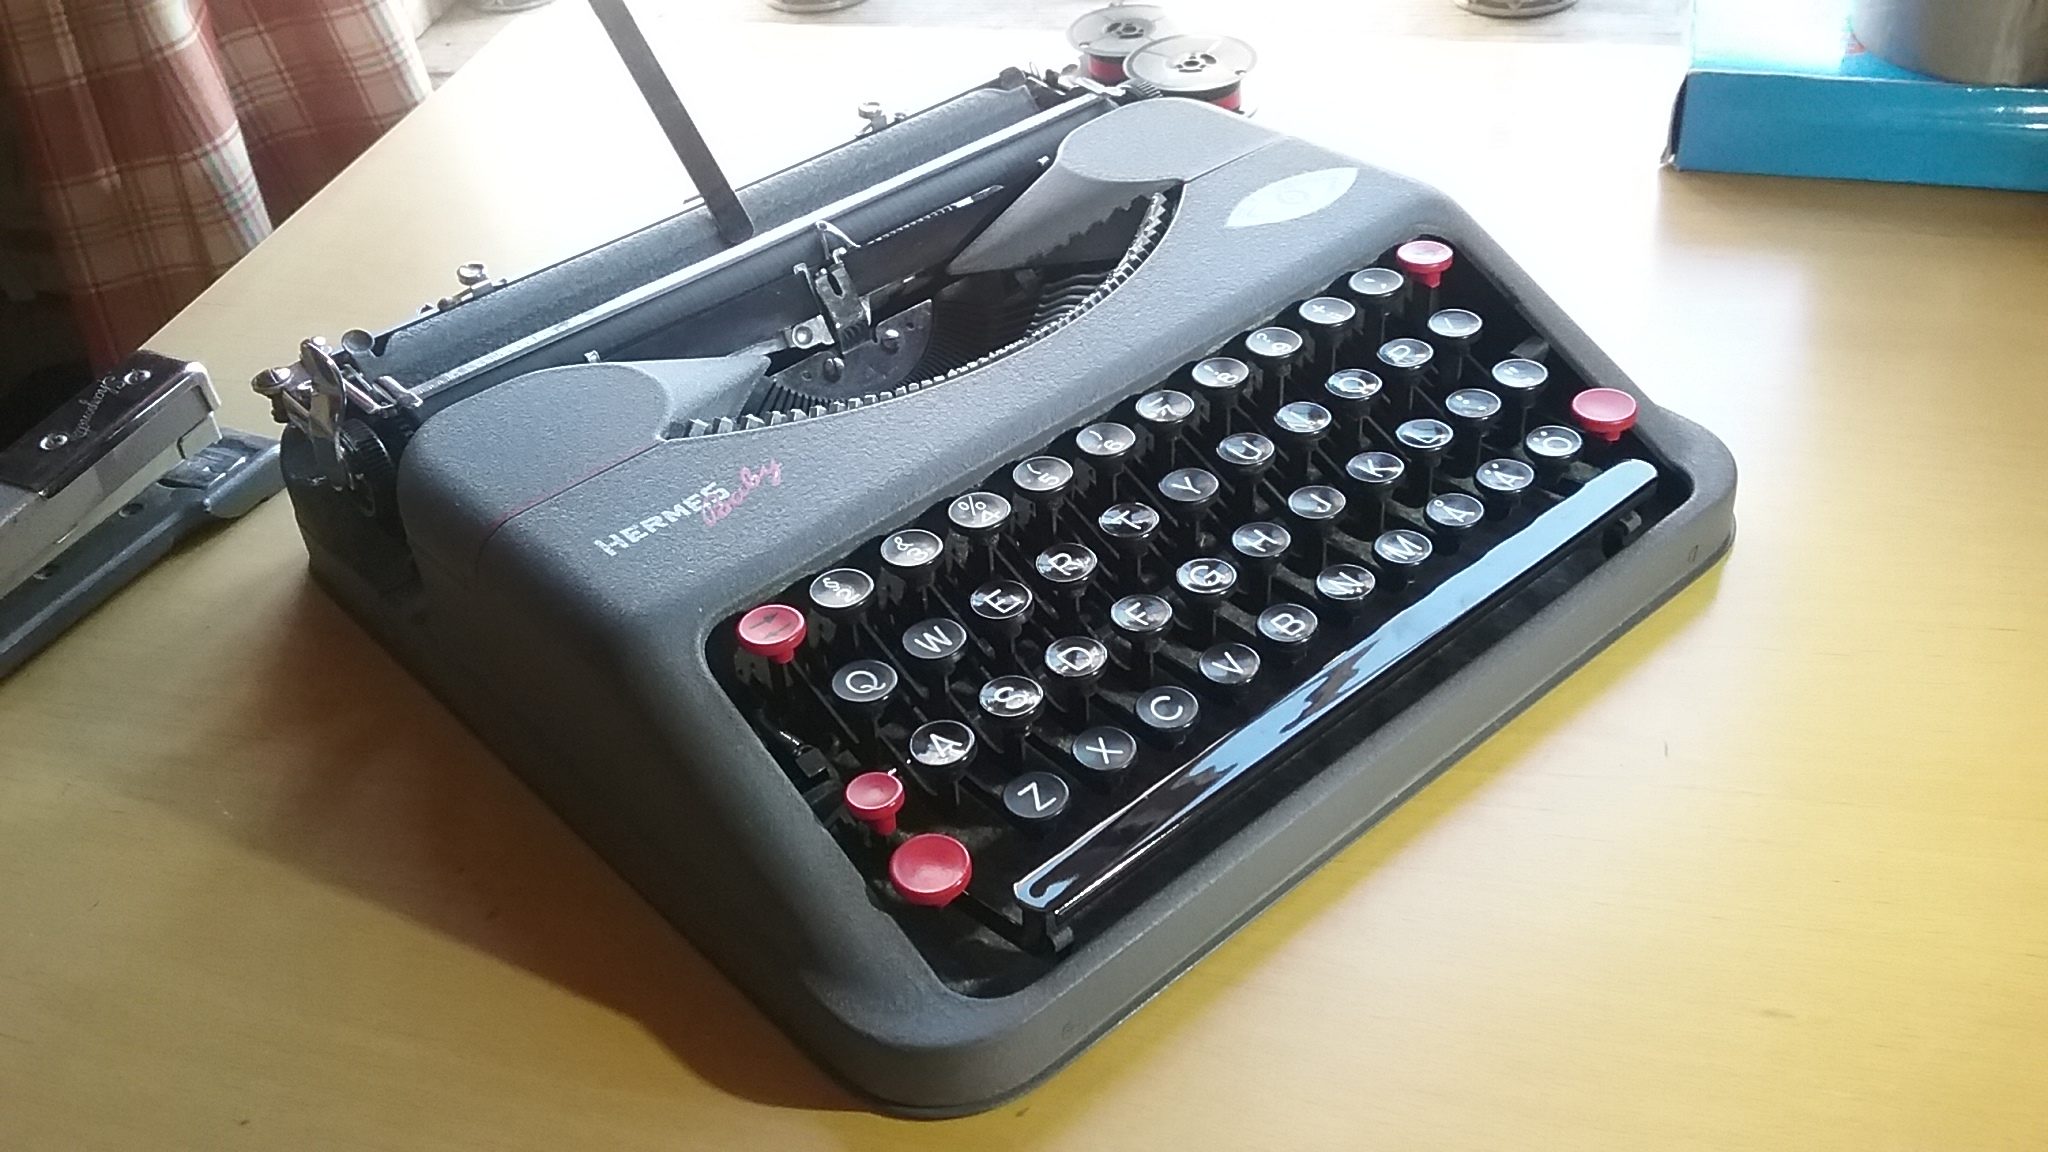 1944 Hermes Baby Ultra Portable Typewriter